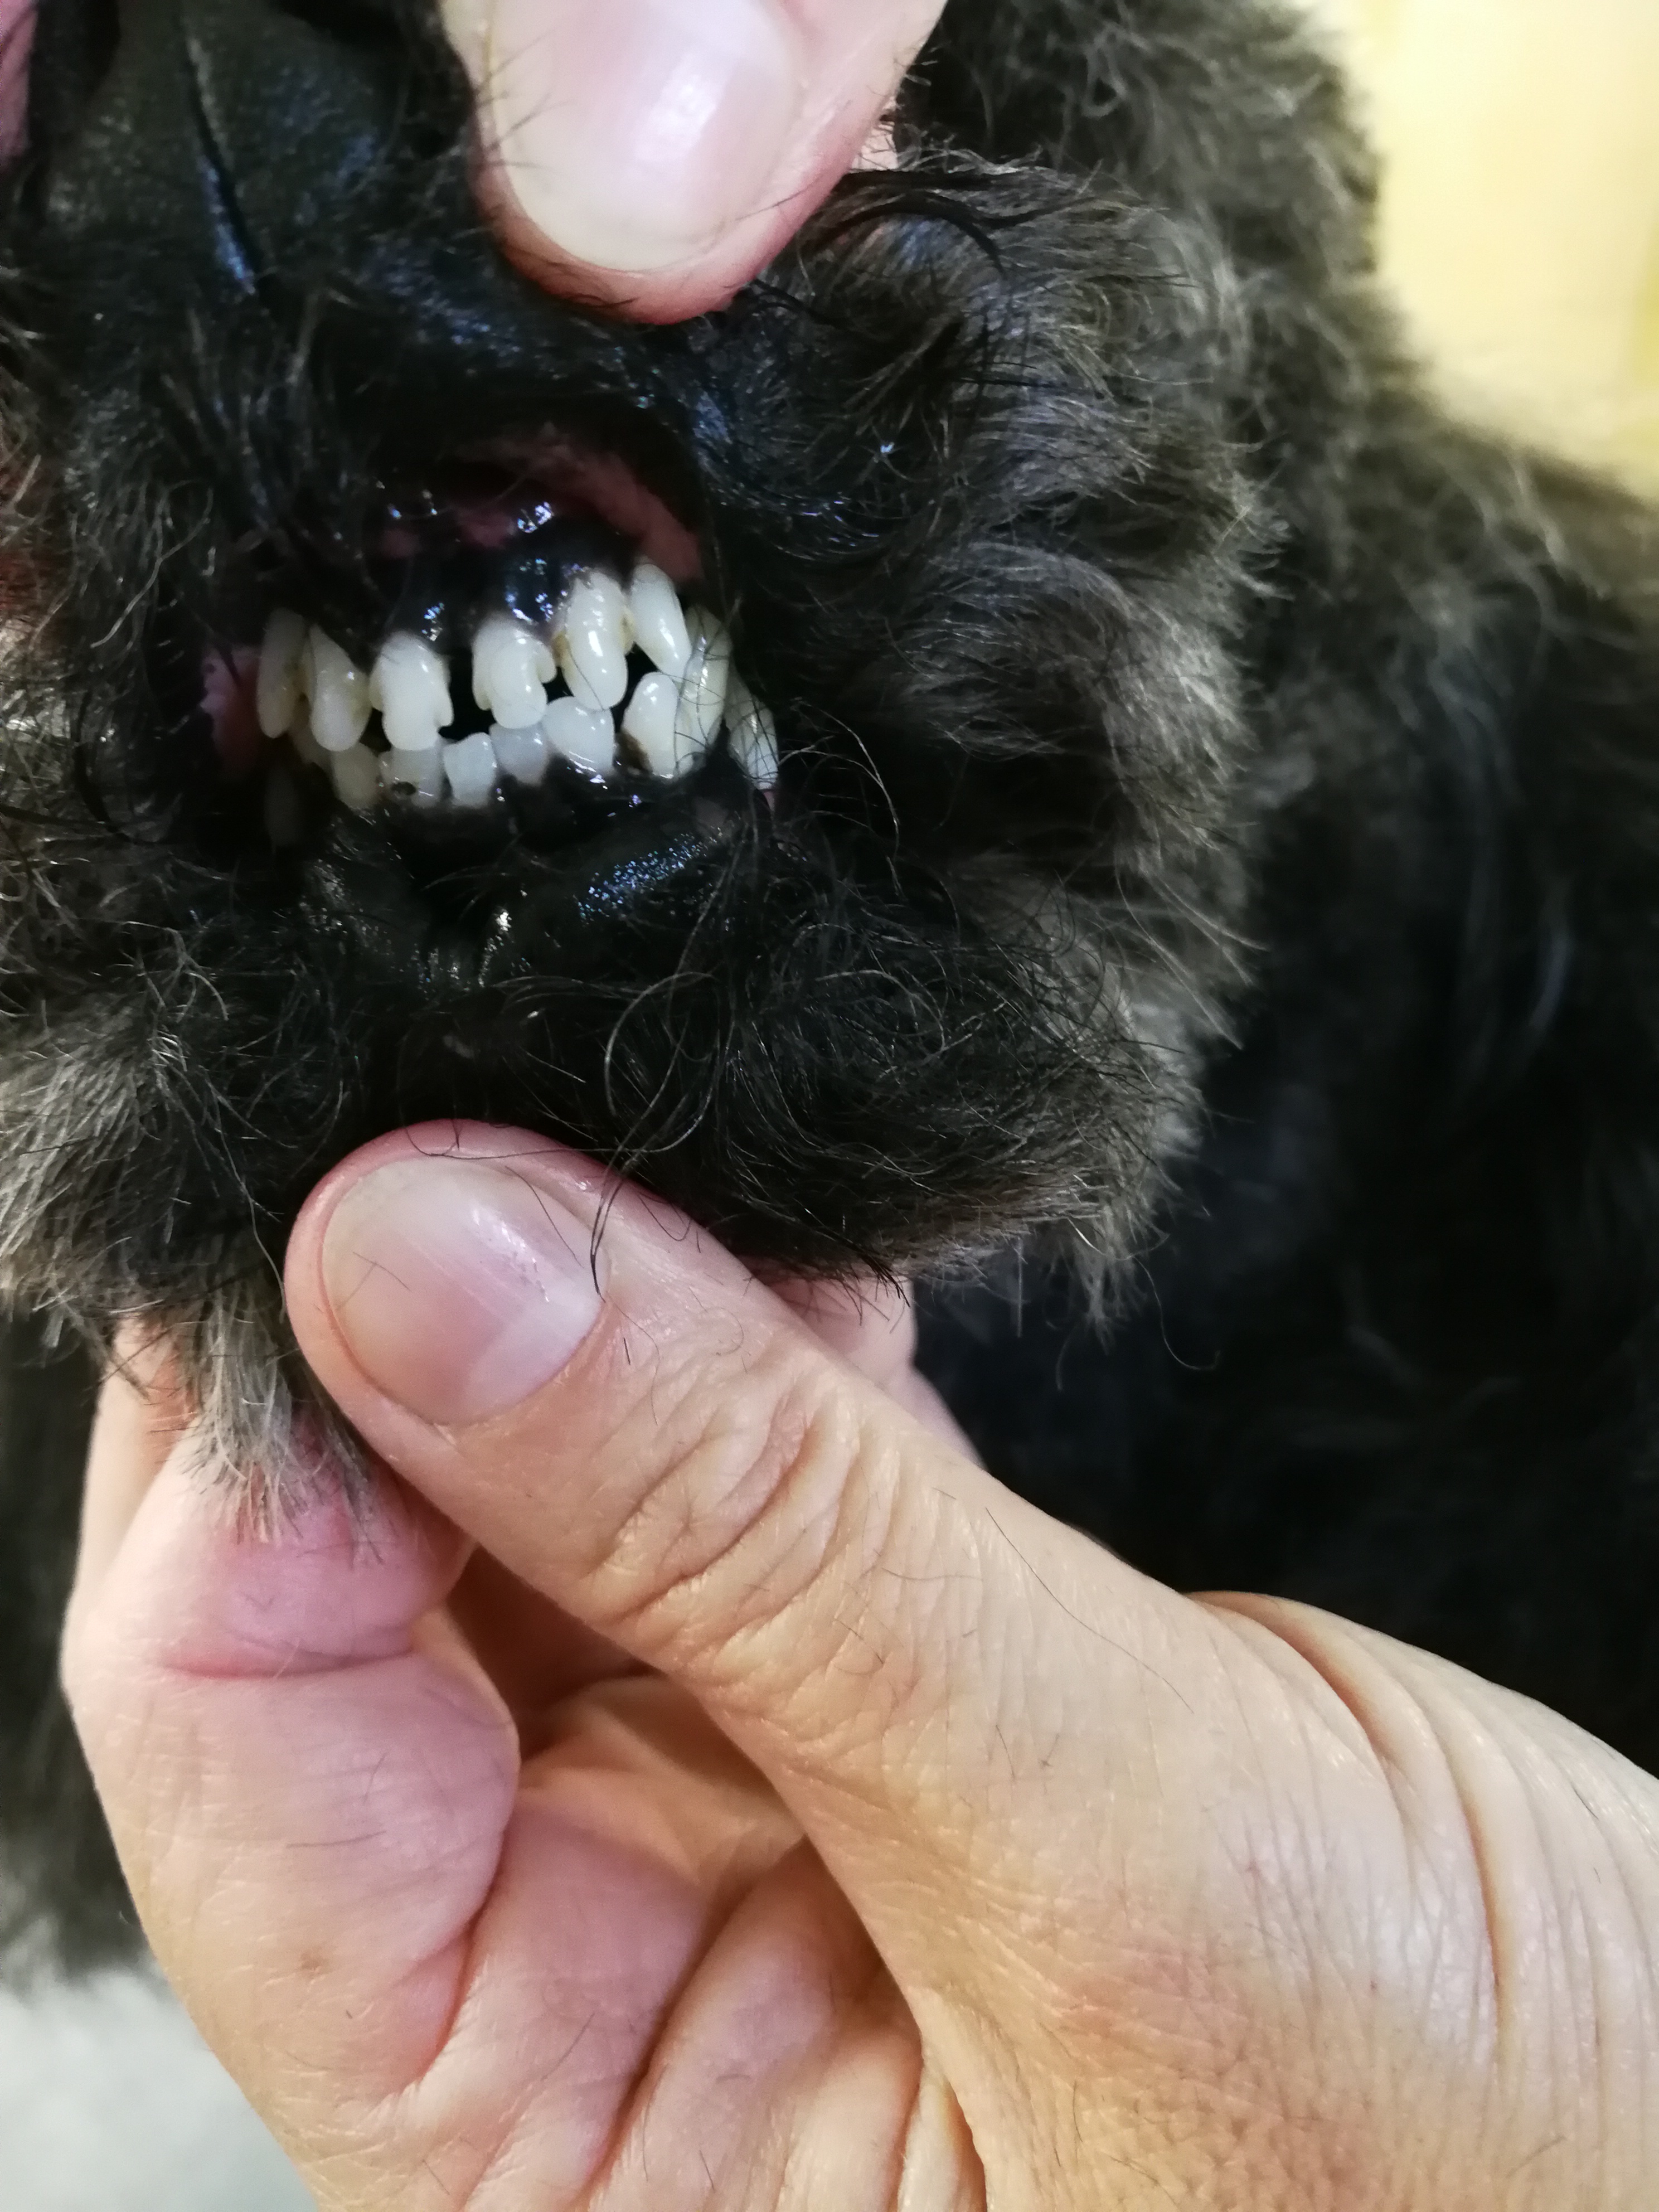 Pulizia denti cane senza anestesia con spazzolino ad ultrasuoni -  TOELETTATURA ARMONY PET